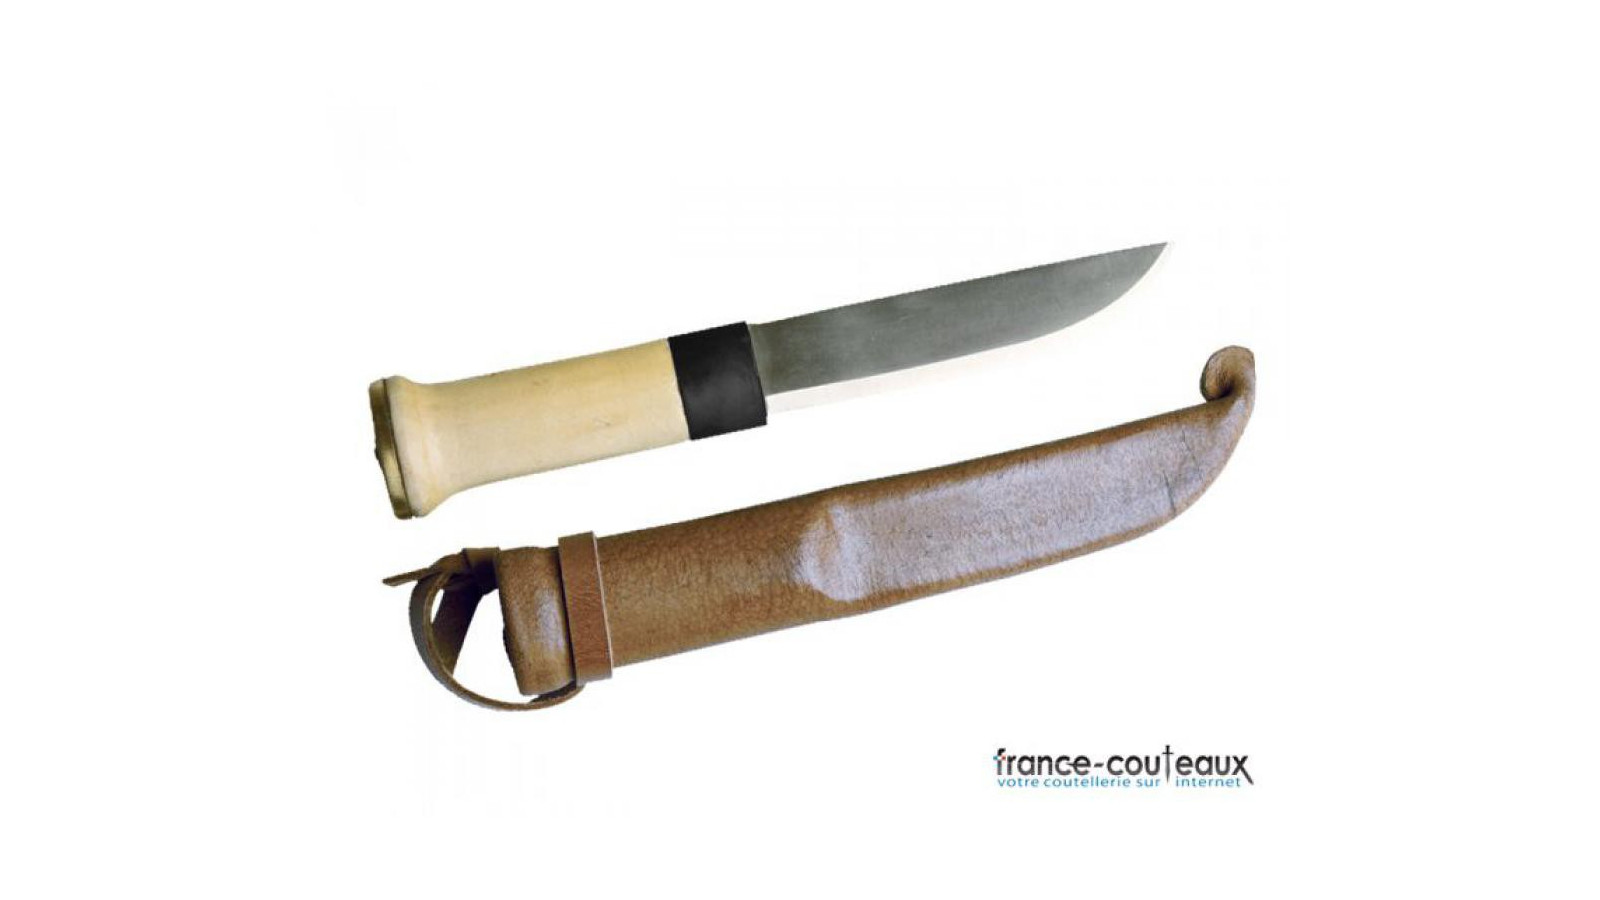 Couteau poignard de chasse basique manche en bois Lapon Court